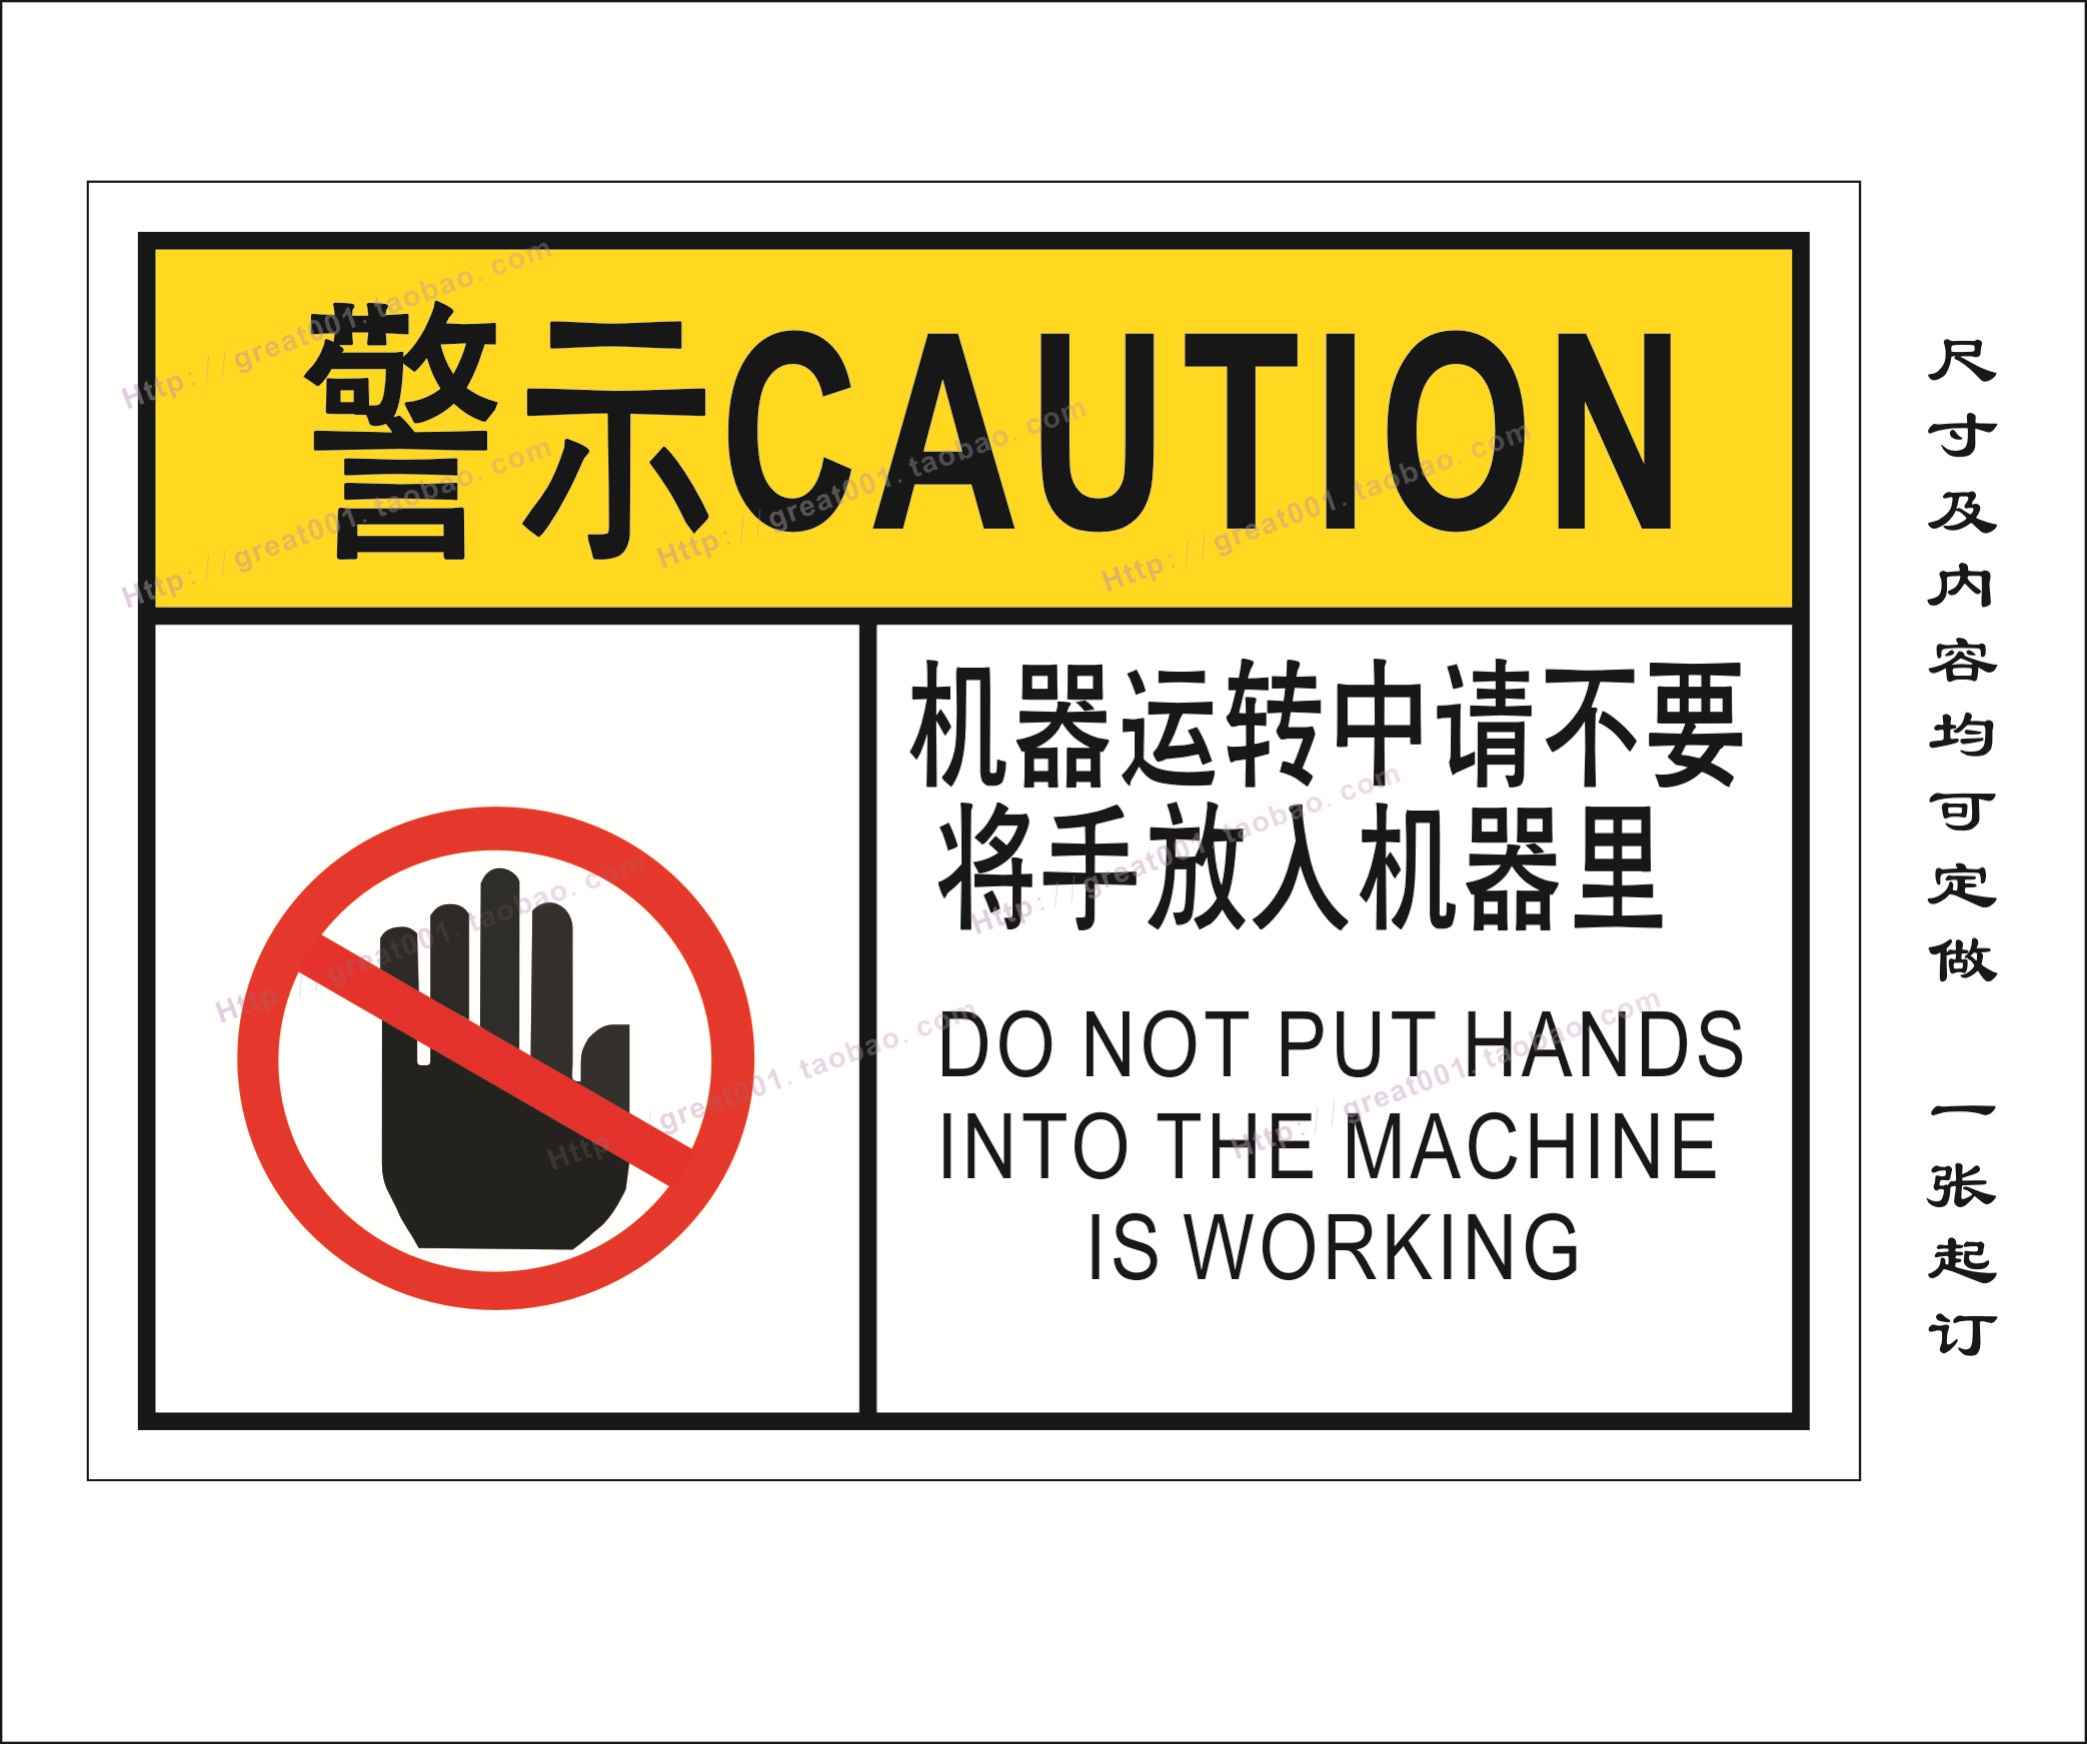 机械警示标签 机械标签 机器运行中请不要伸手 警示语 安全标贴